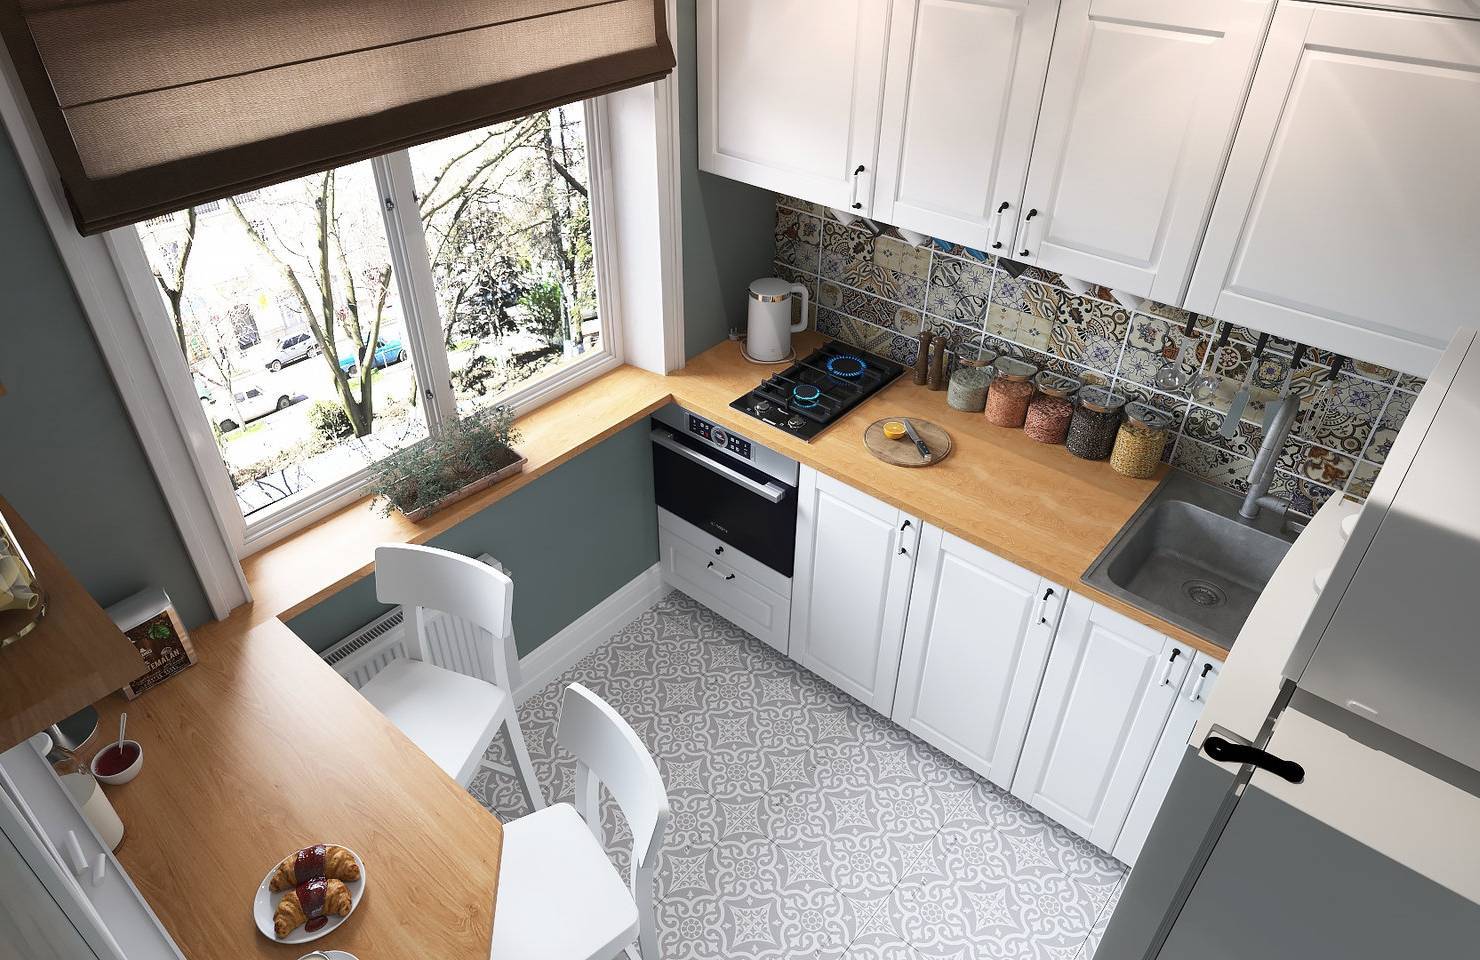 Дизайн маленькой кухни 5 кв.м с холодильником, идеи для интерьера в хрущевке, малогабаритная мебель и современный угловой гарнитур в планировке